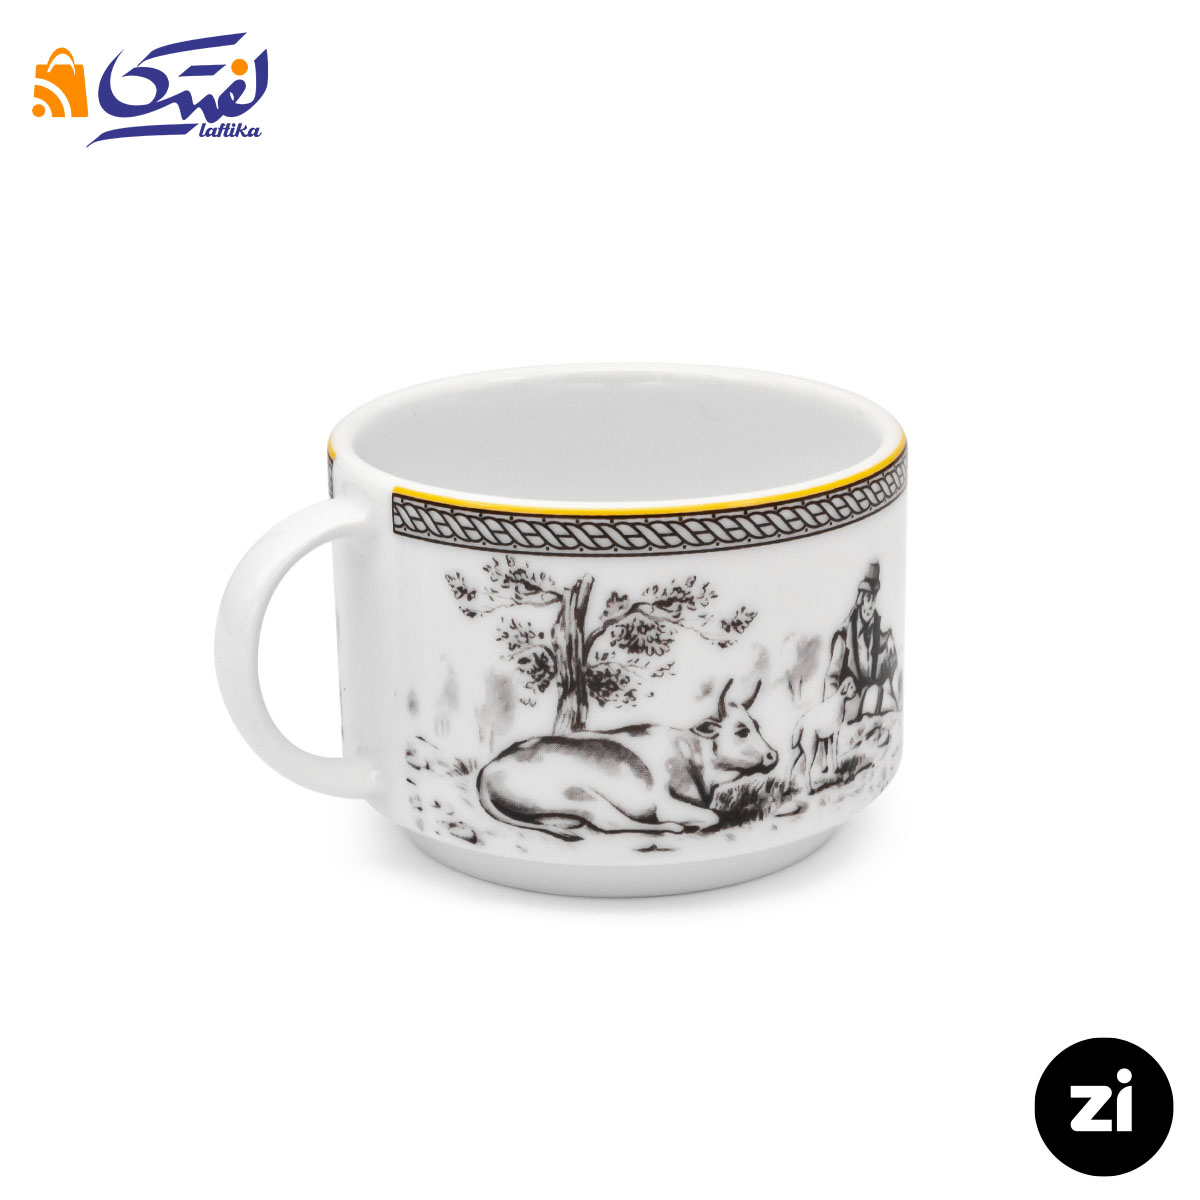 فنجان چایخوری چینی زرین Zi فرم اس ویلیج سایز 8